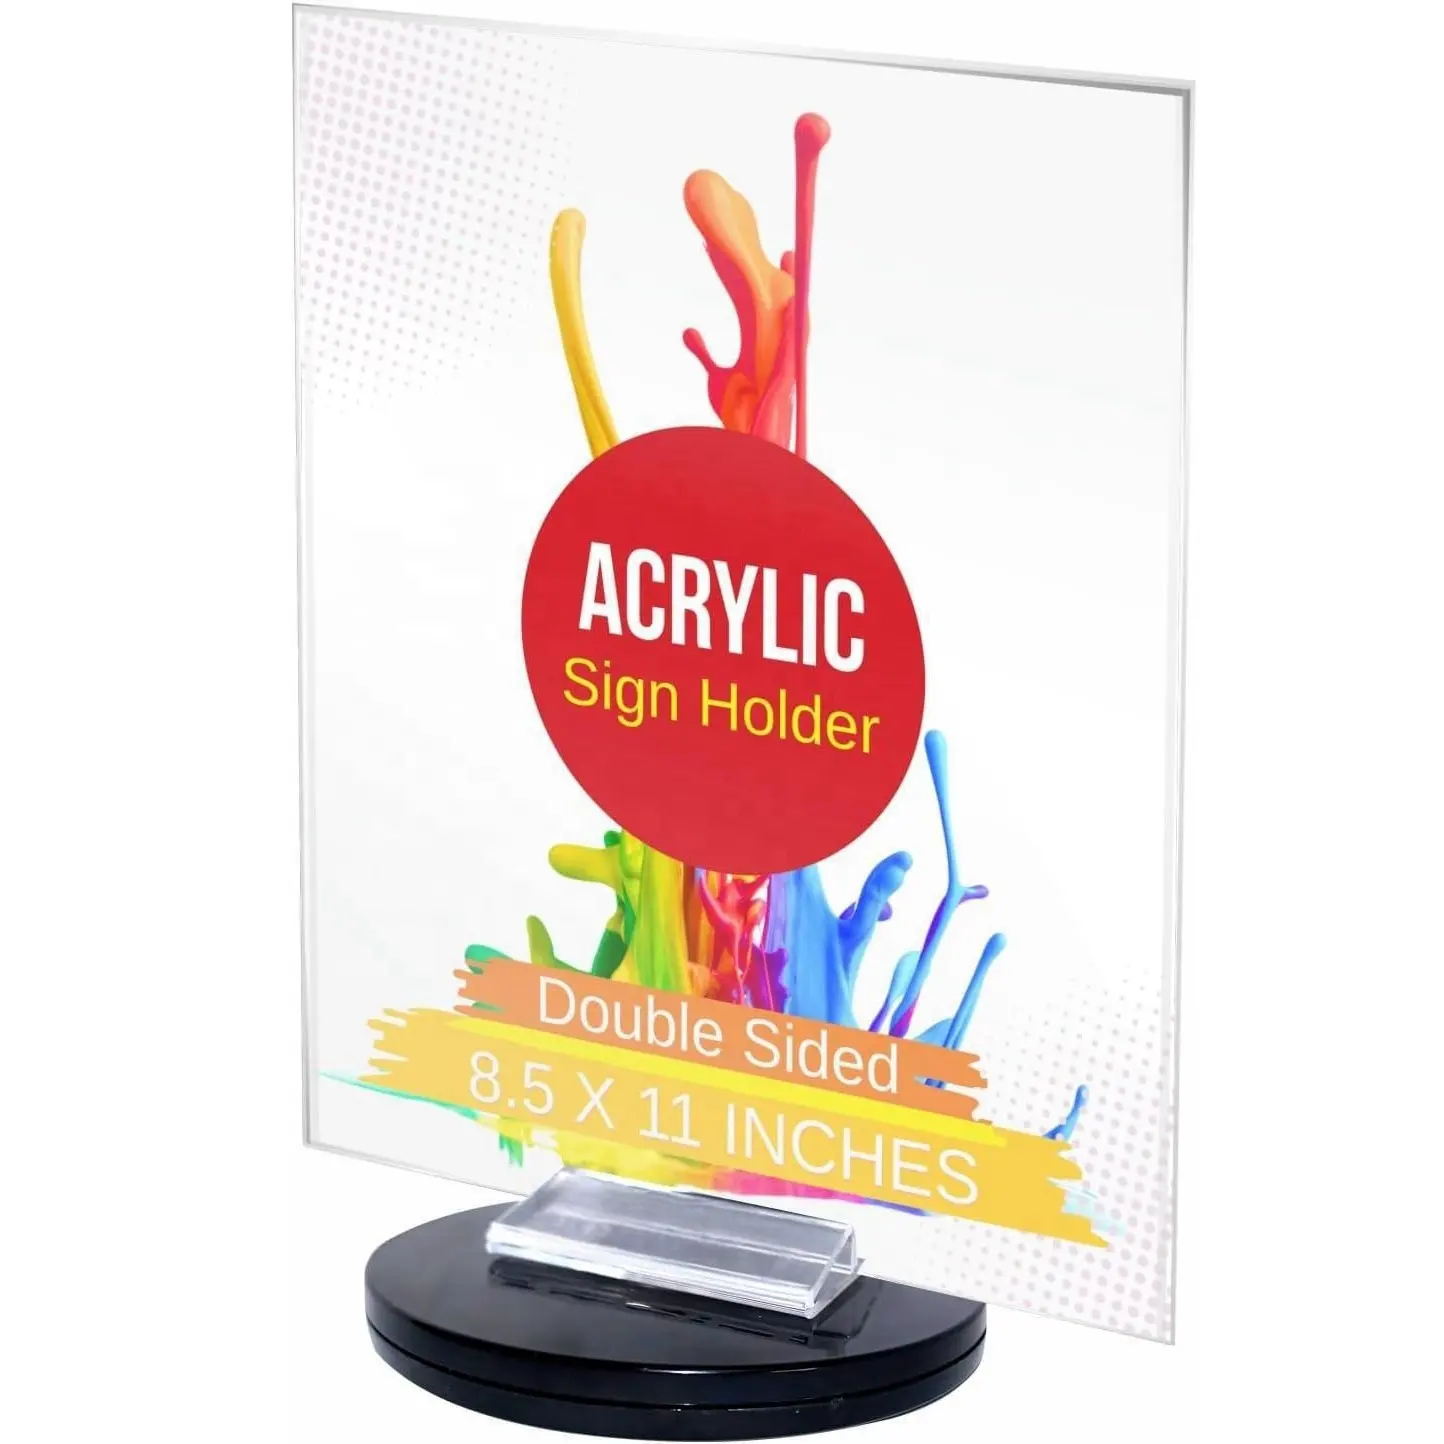 360 clair acrylique porte-signe affichage en plastique Table papier supports flyer Menu cadre Document table cadre photo pour magasin